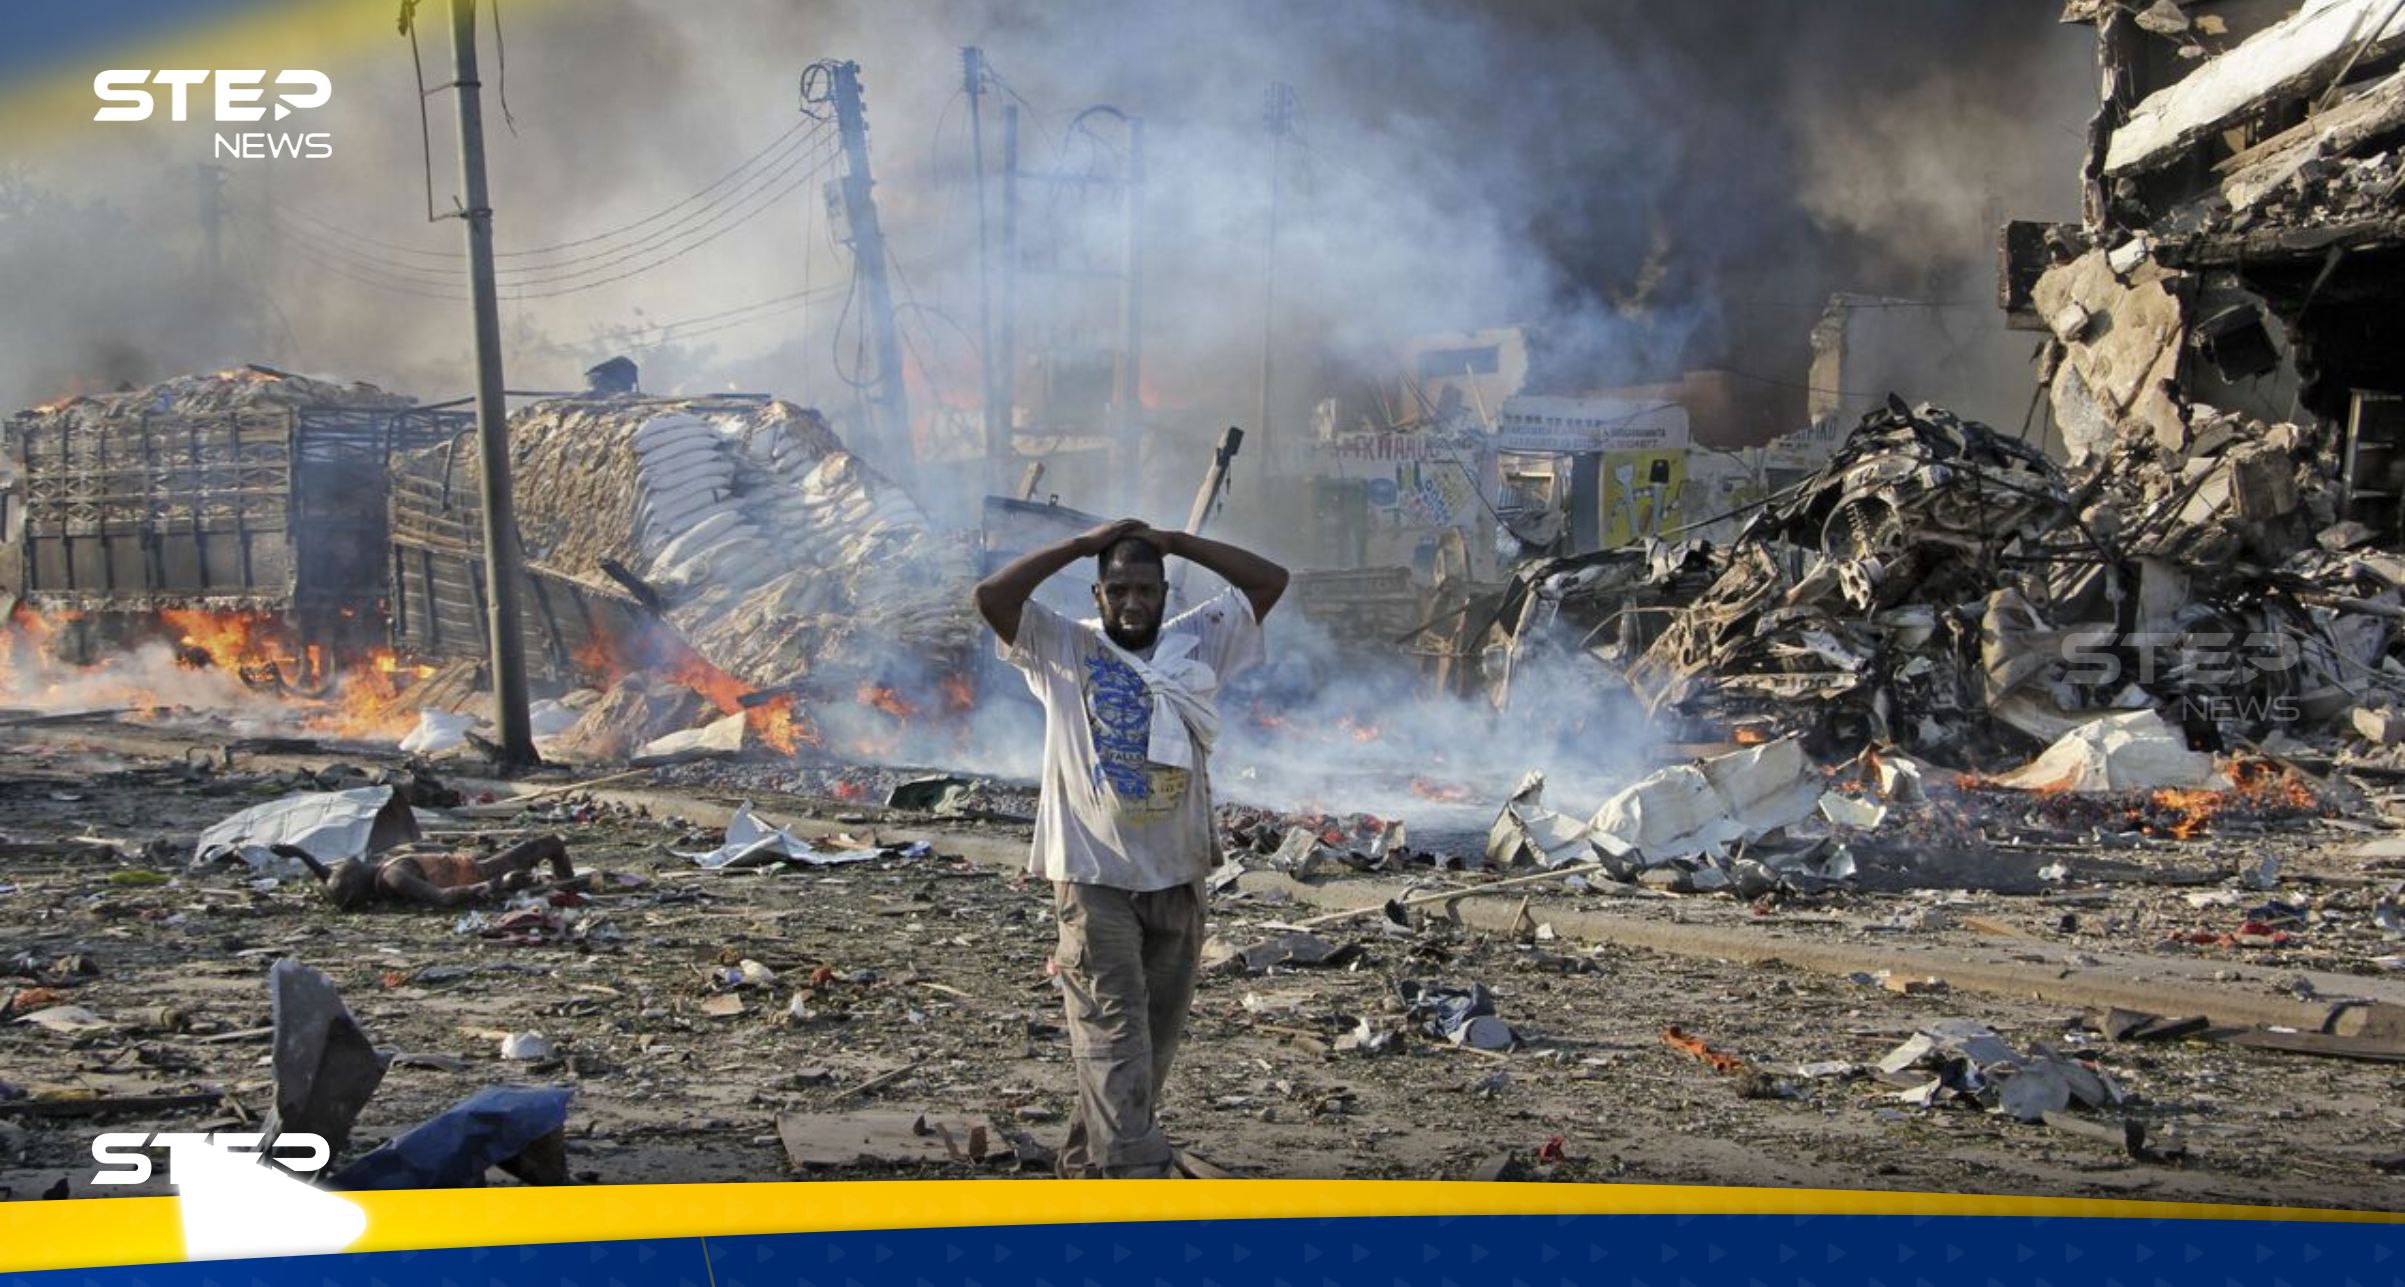 قتلى وجرحى جراء قصف بمدافع الهاون على سوق شعبي بالعاصمة الصومالية مقديشو